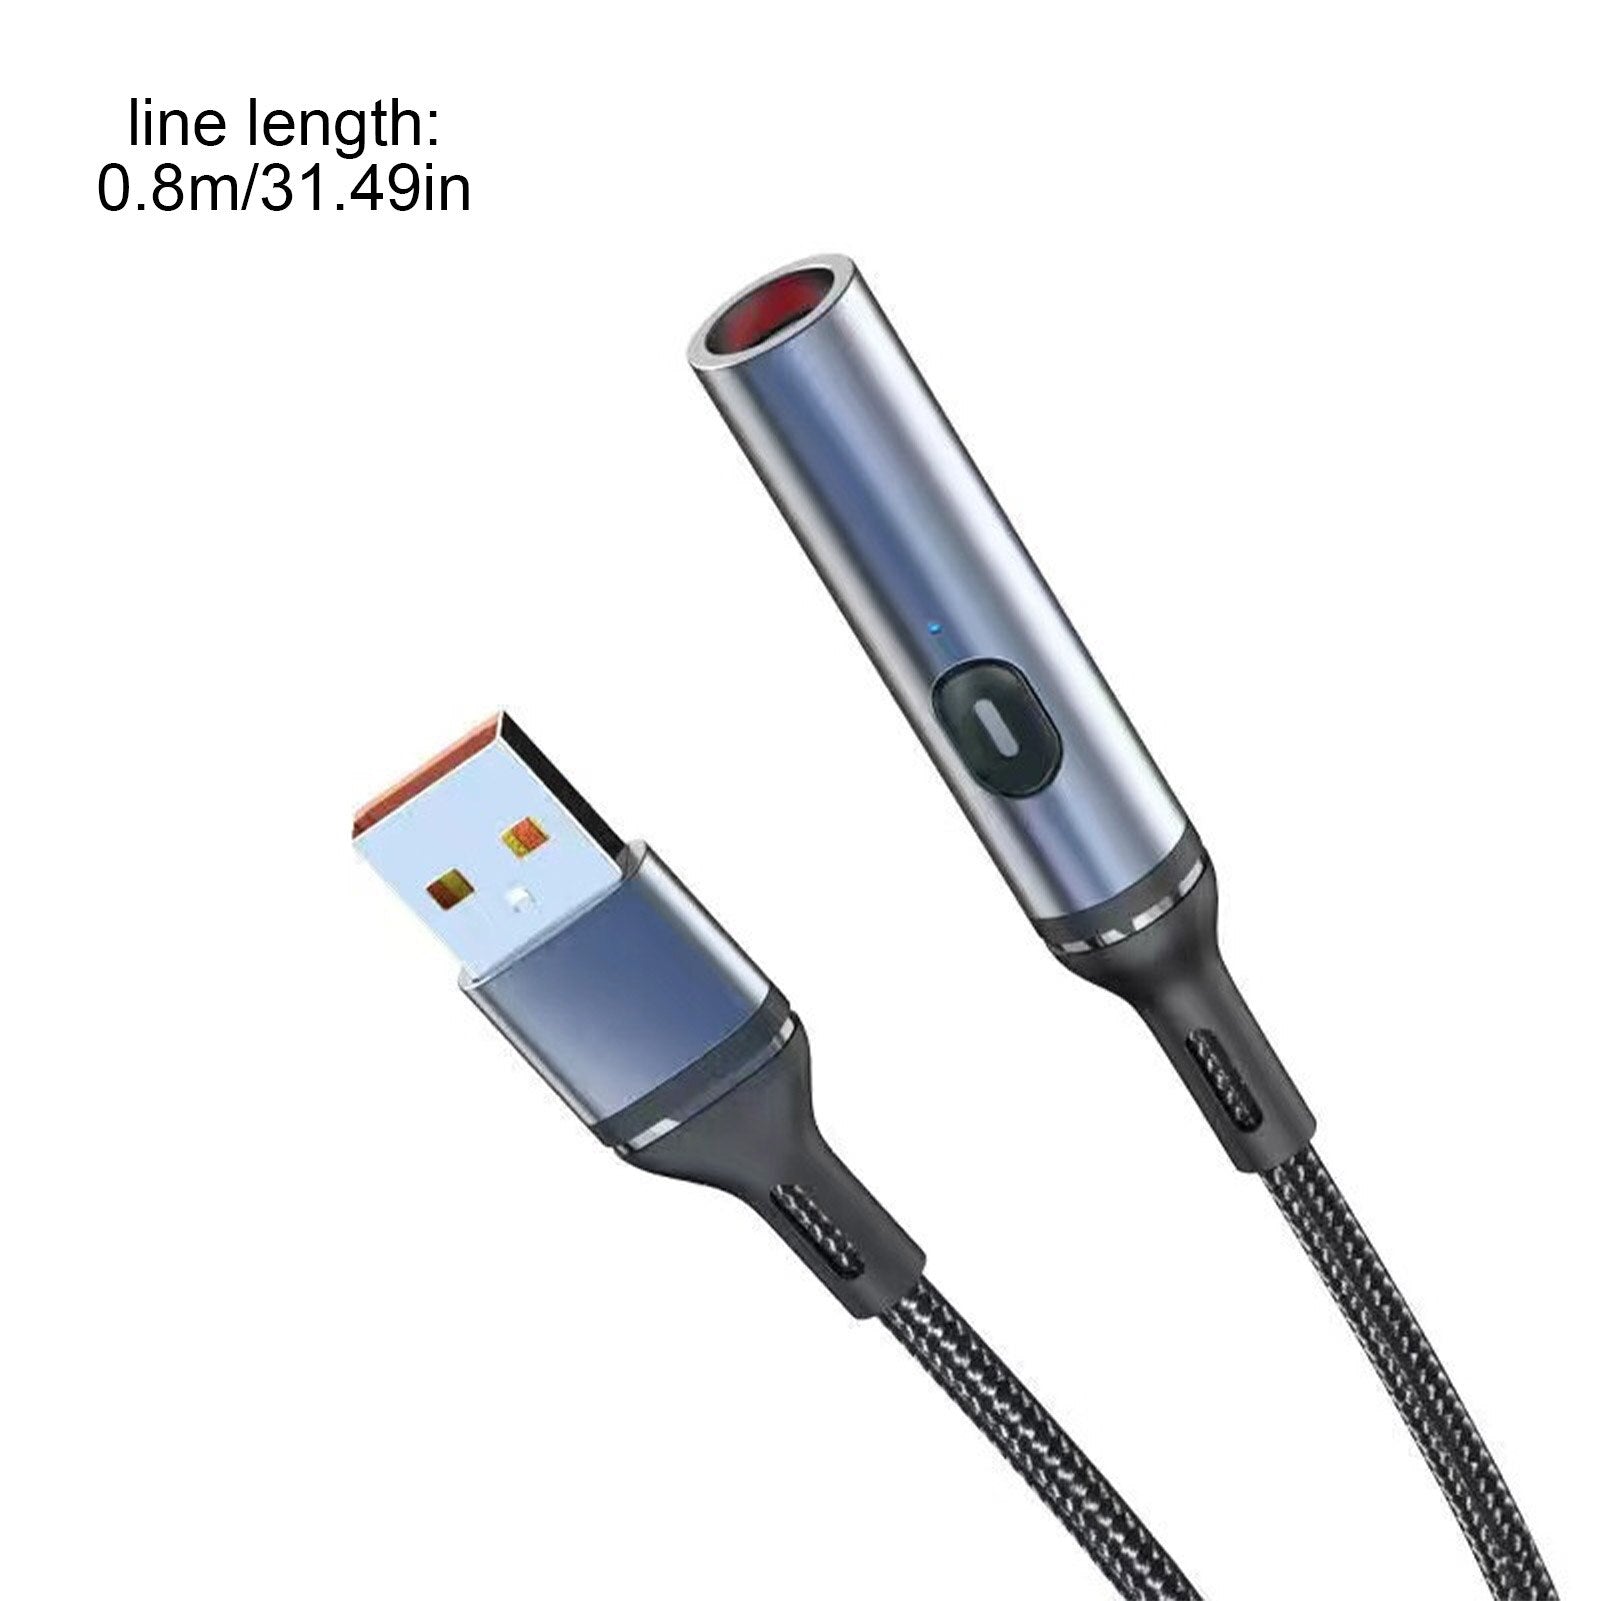 Atongm çoklu şarj kablosu 12V 120W araç çakmak şarj adaptörü tip-c cep telefonları için mikro usb bağlantı noktası konnektörleri tabletler